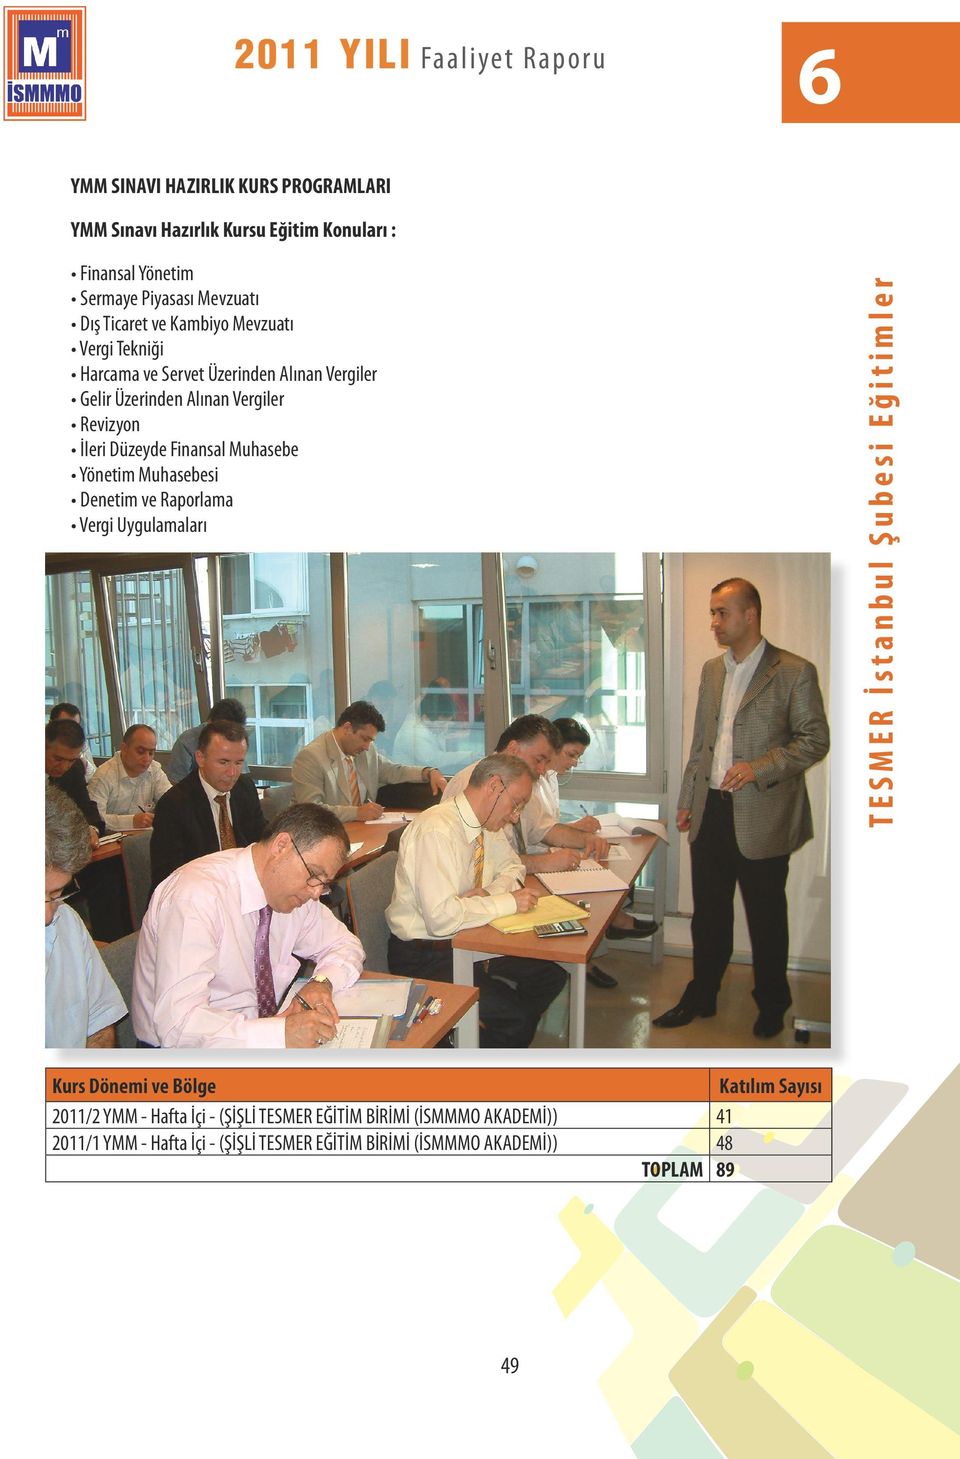 Finansal Muhasebe Yönetim Muhasebesi Denetim ve Raporlama Vergi Uygulamaları Kurs Dönemi ve Bölge Katılım Sayısı 2011/2 YMM - Hafta İçi